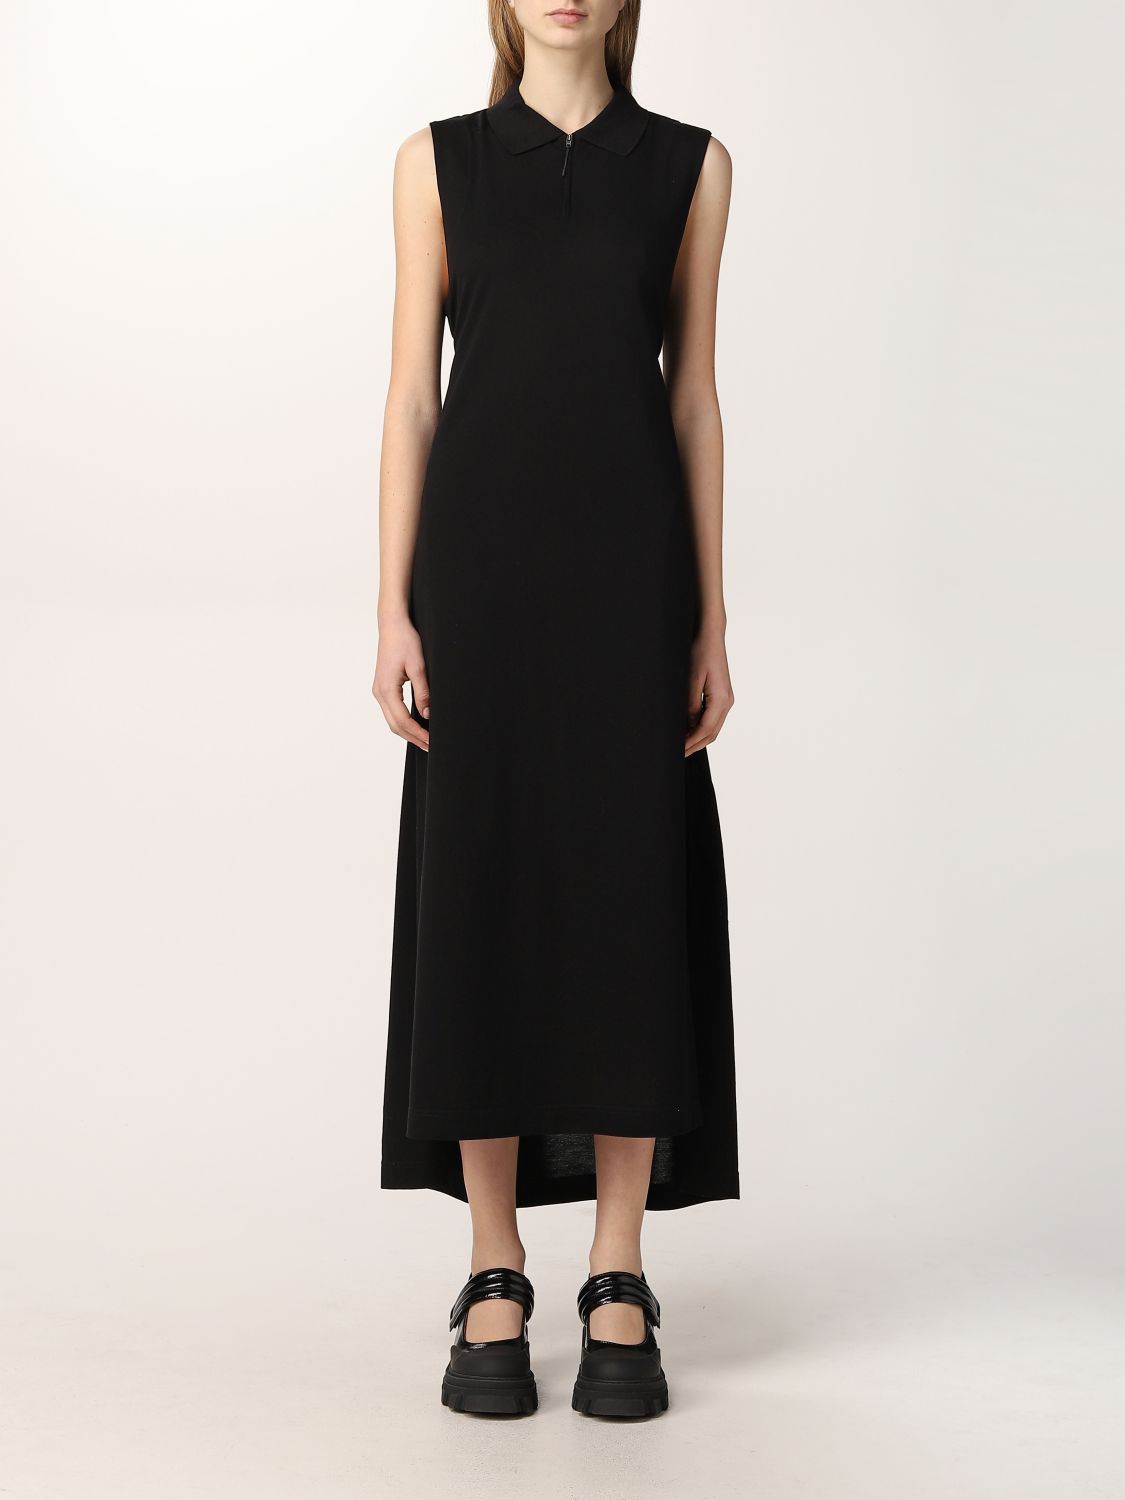 Y-3: Dress women - Black | Y-3 dress GV4354 online on GIGLIO.COM